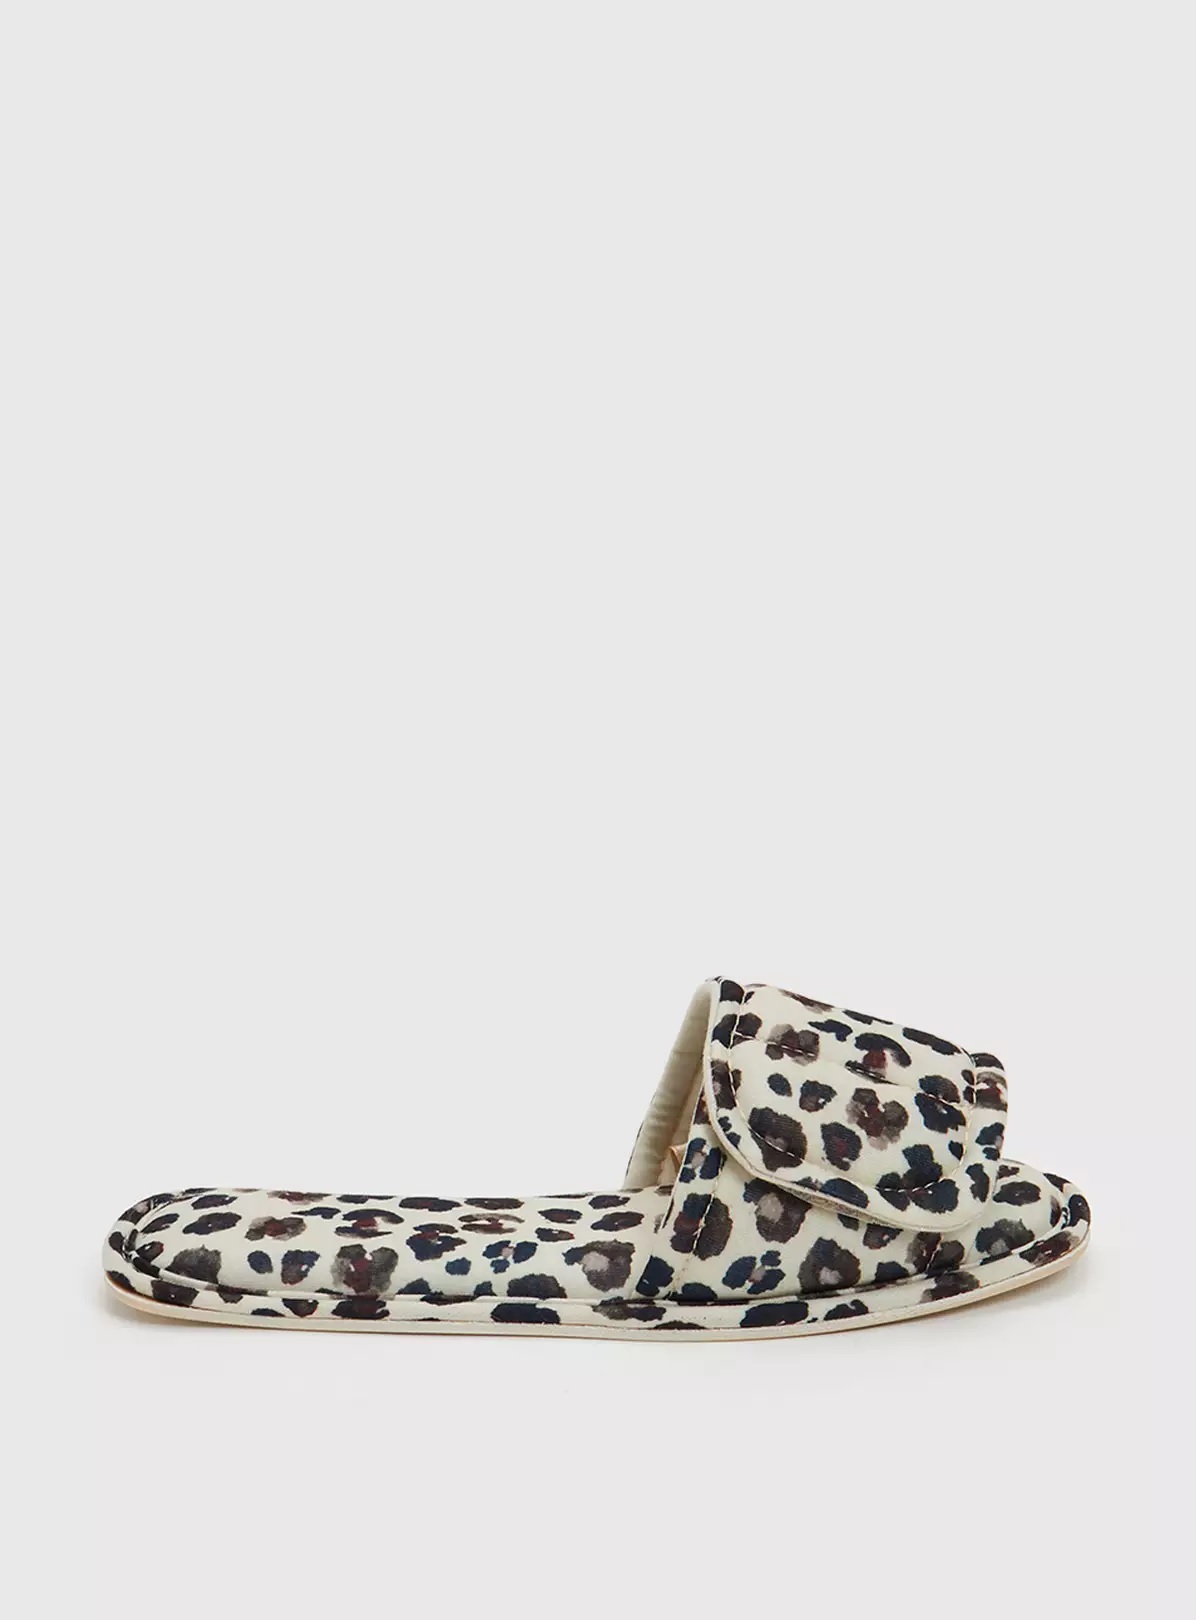 Kaufen Sie diese Slipper mit Leopardenmuster für 5,60 £ bei Tu von Sainsbury's